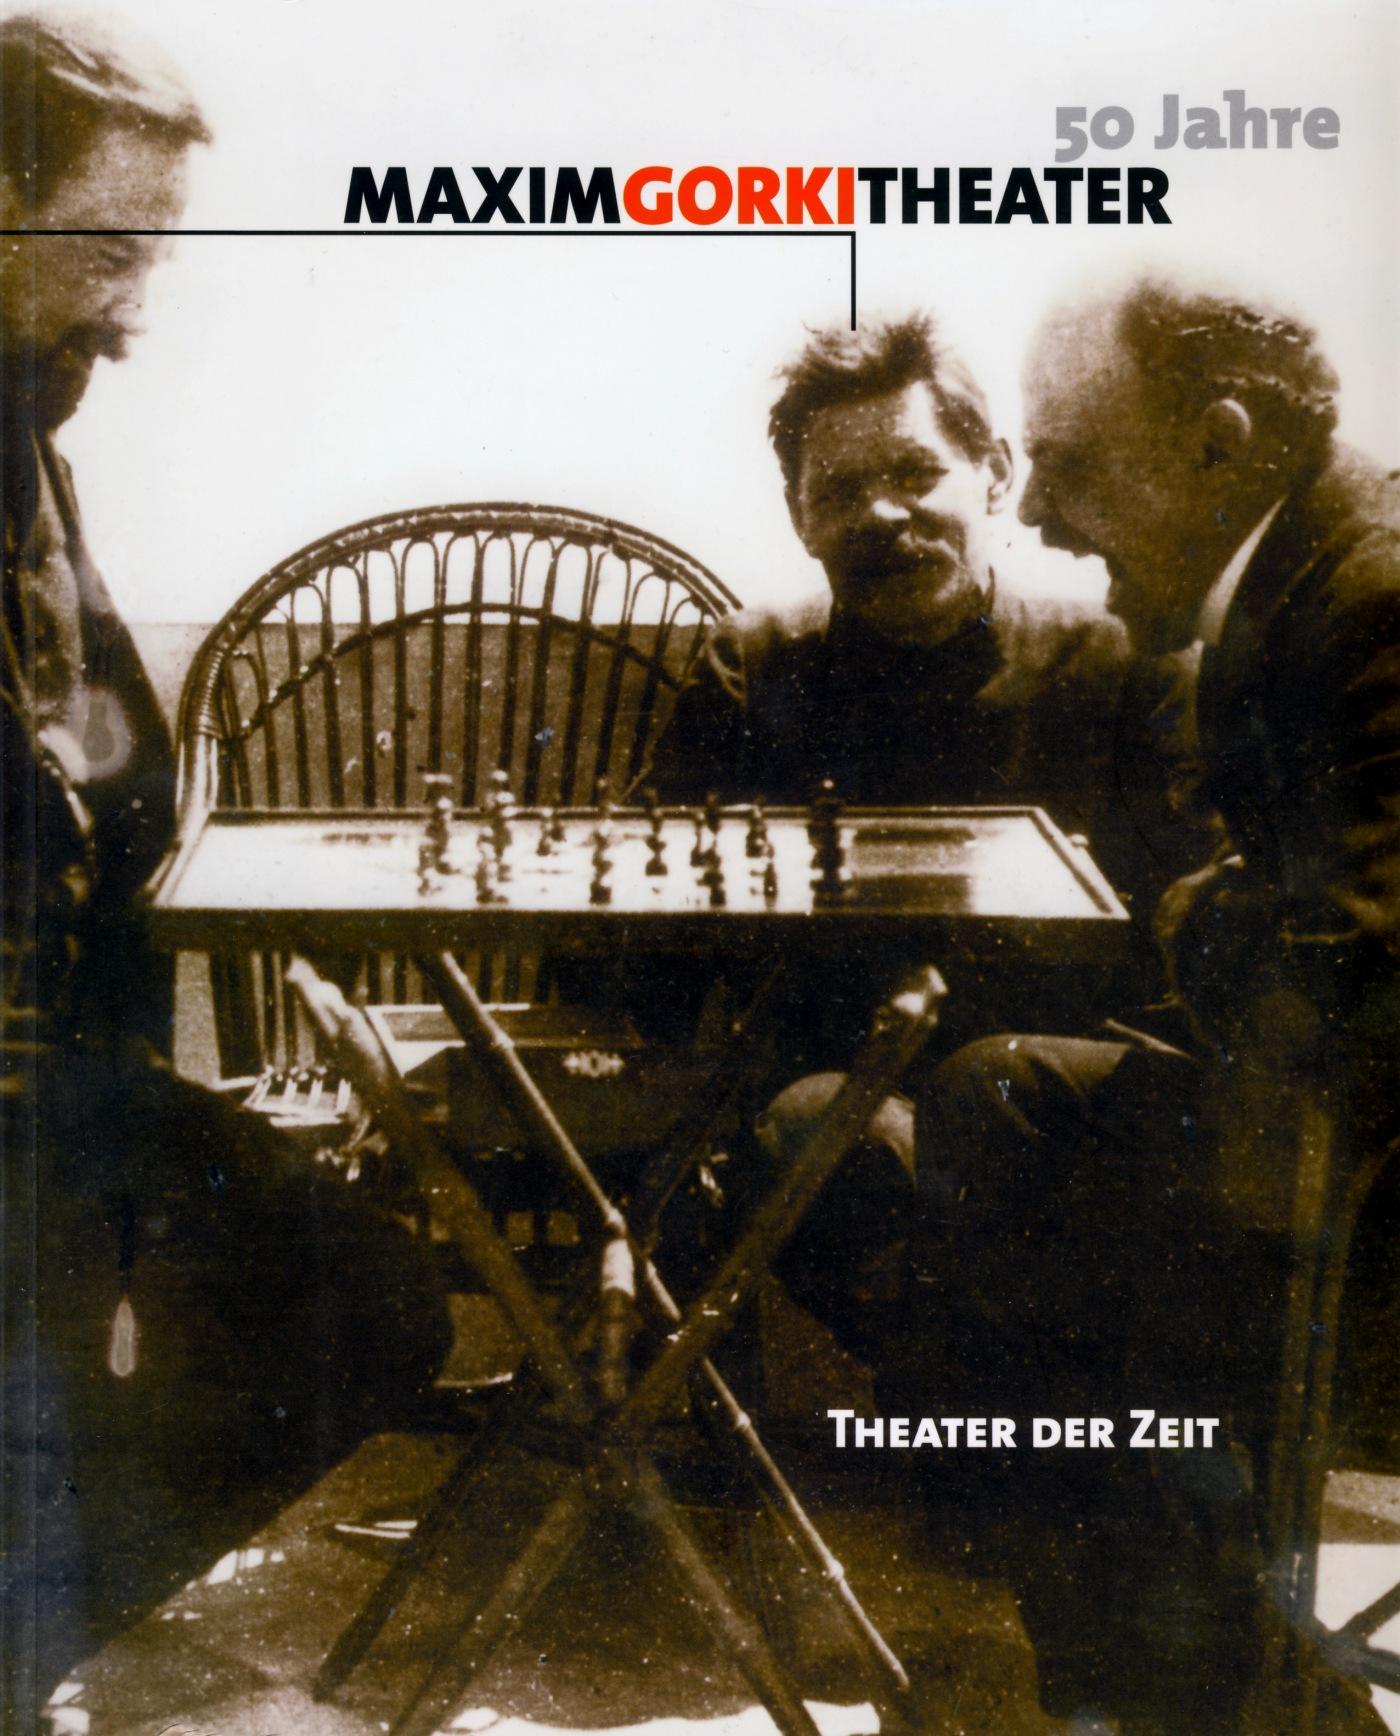 "50 Jahre Maxim Gorki Theater"